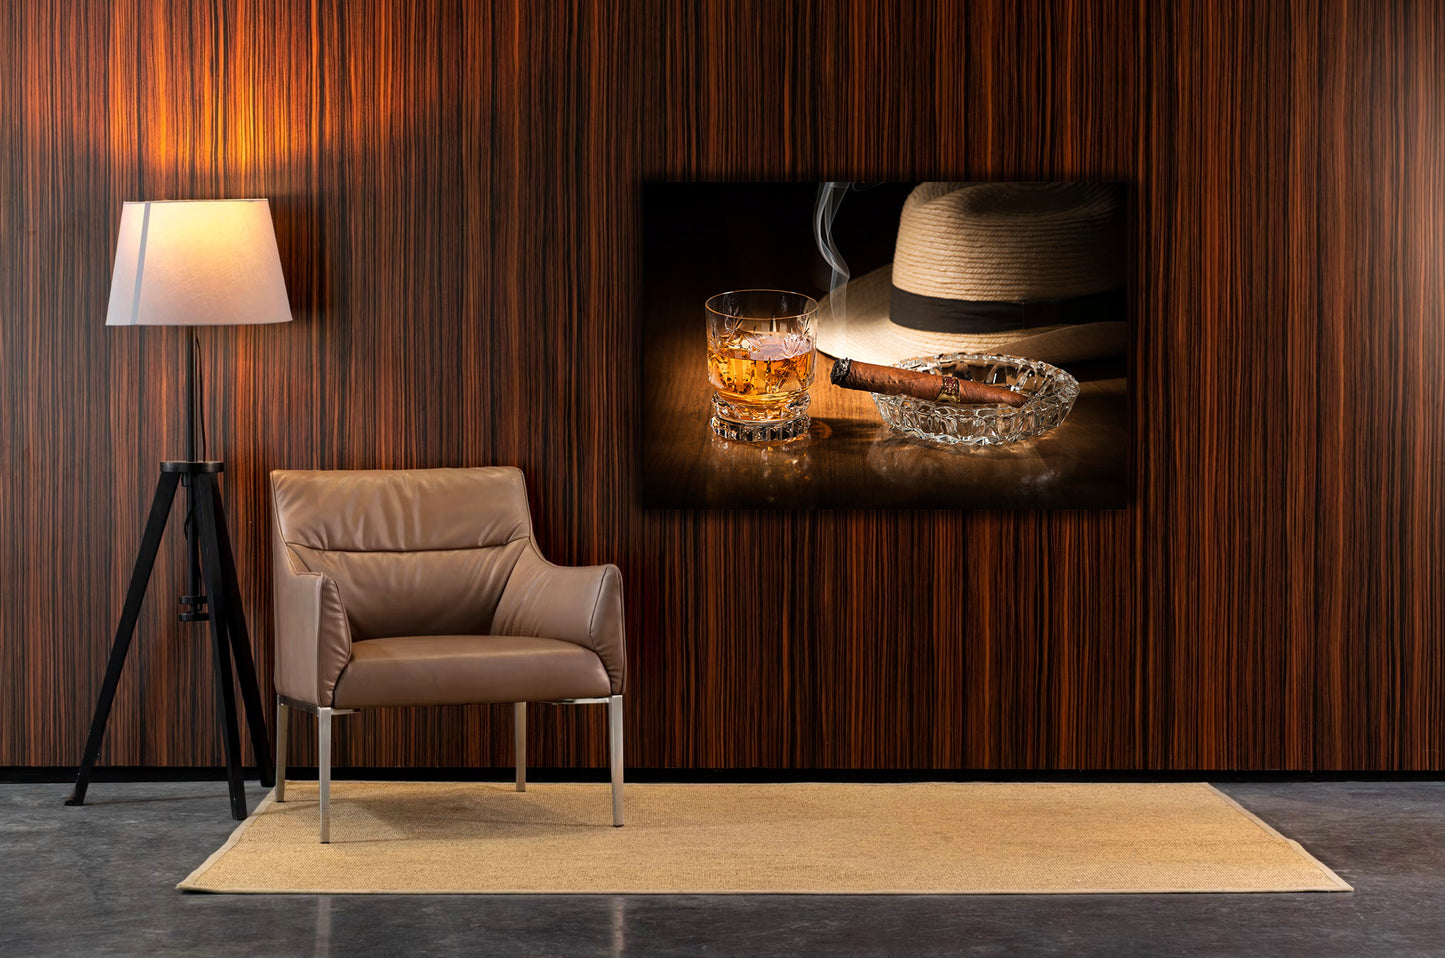 CUBAN Rum and Cigar Modern Wall Art